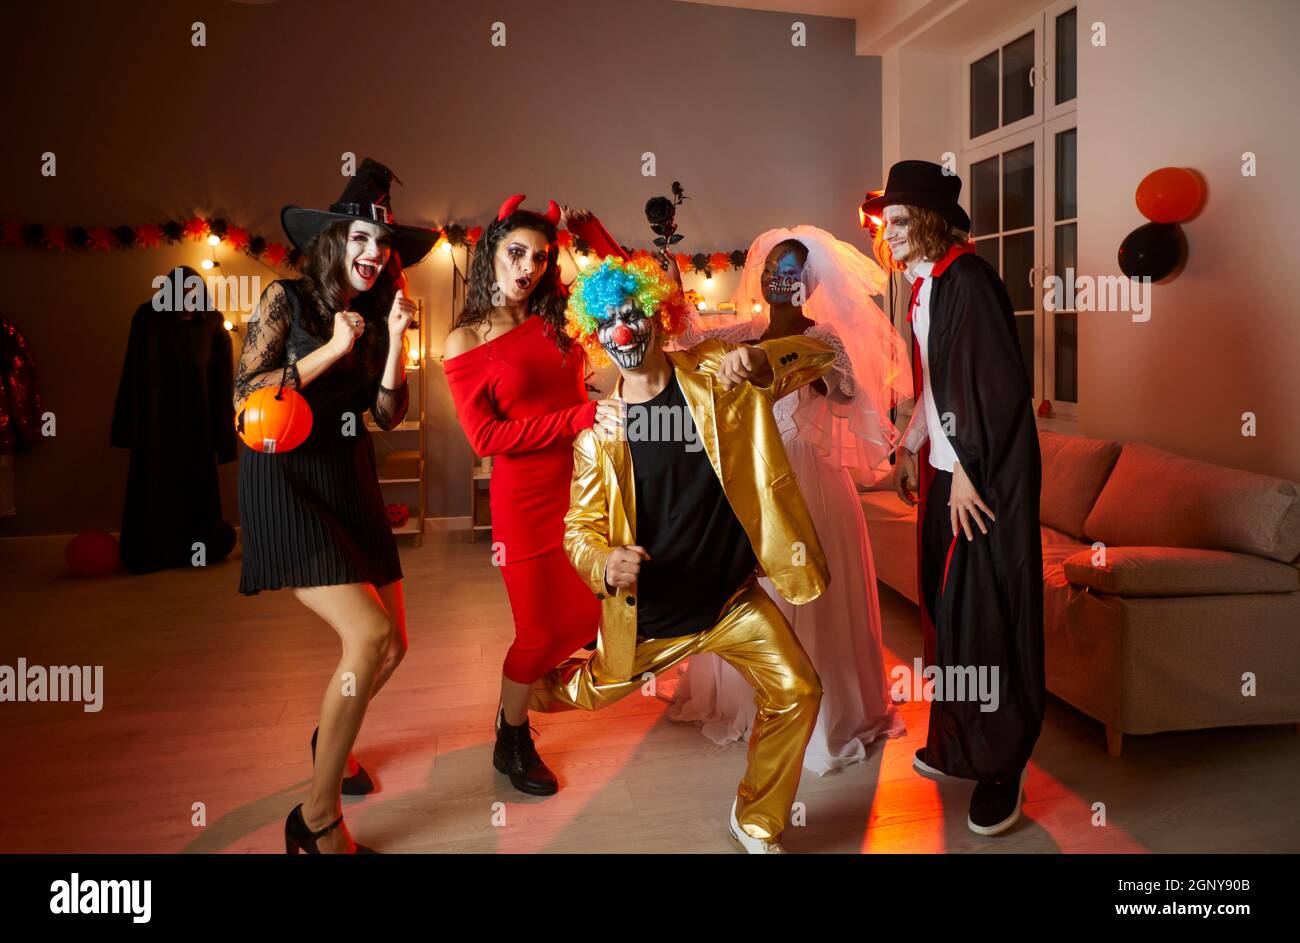 Groupe de jeunes amis heureux en costumes s'amusant à une fête d'Halloween à la maison Banque D'Images